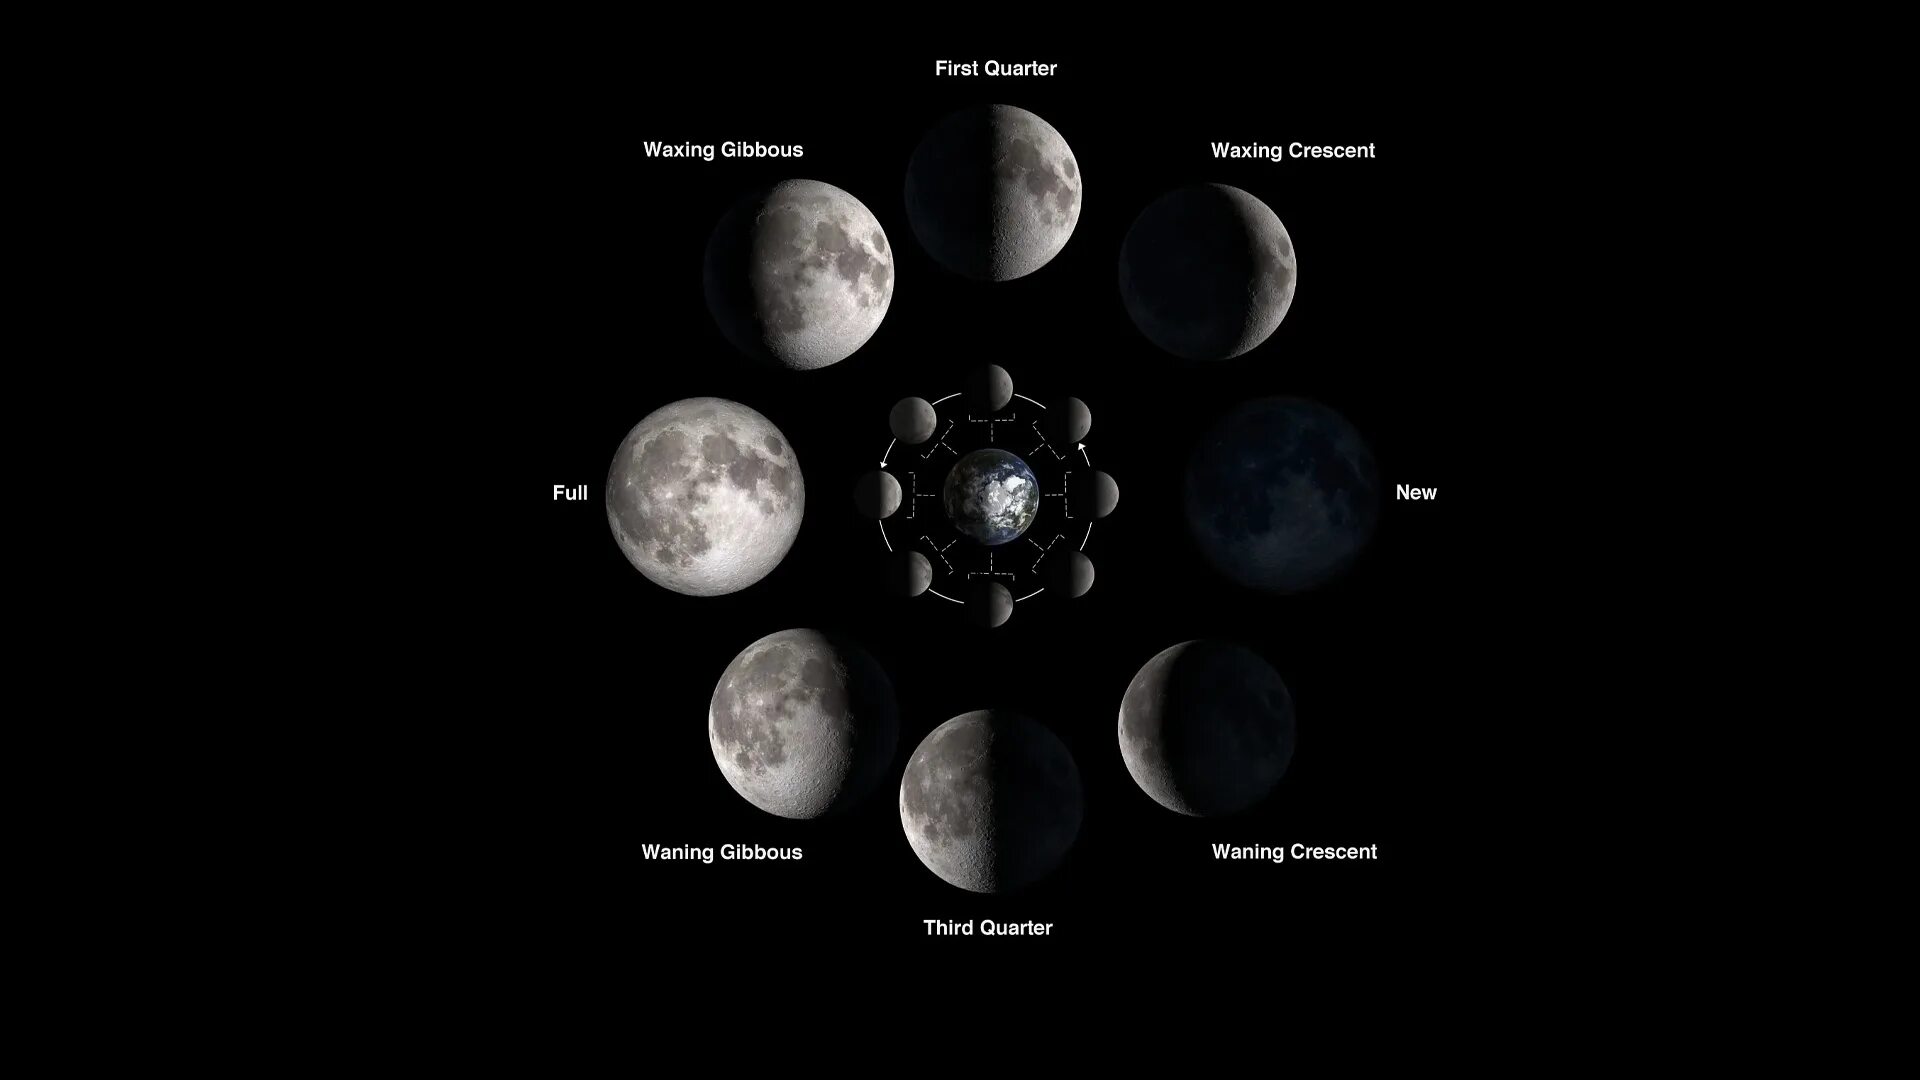 Синодический месяц Луны. Полный цикл смены лунных фаз составляет. Фаза Луны первая четверть. Фазы Луны синодический и сидерический месяцы. Период 3 луны